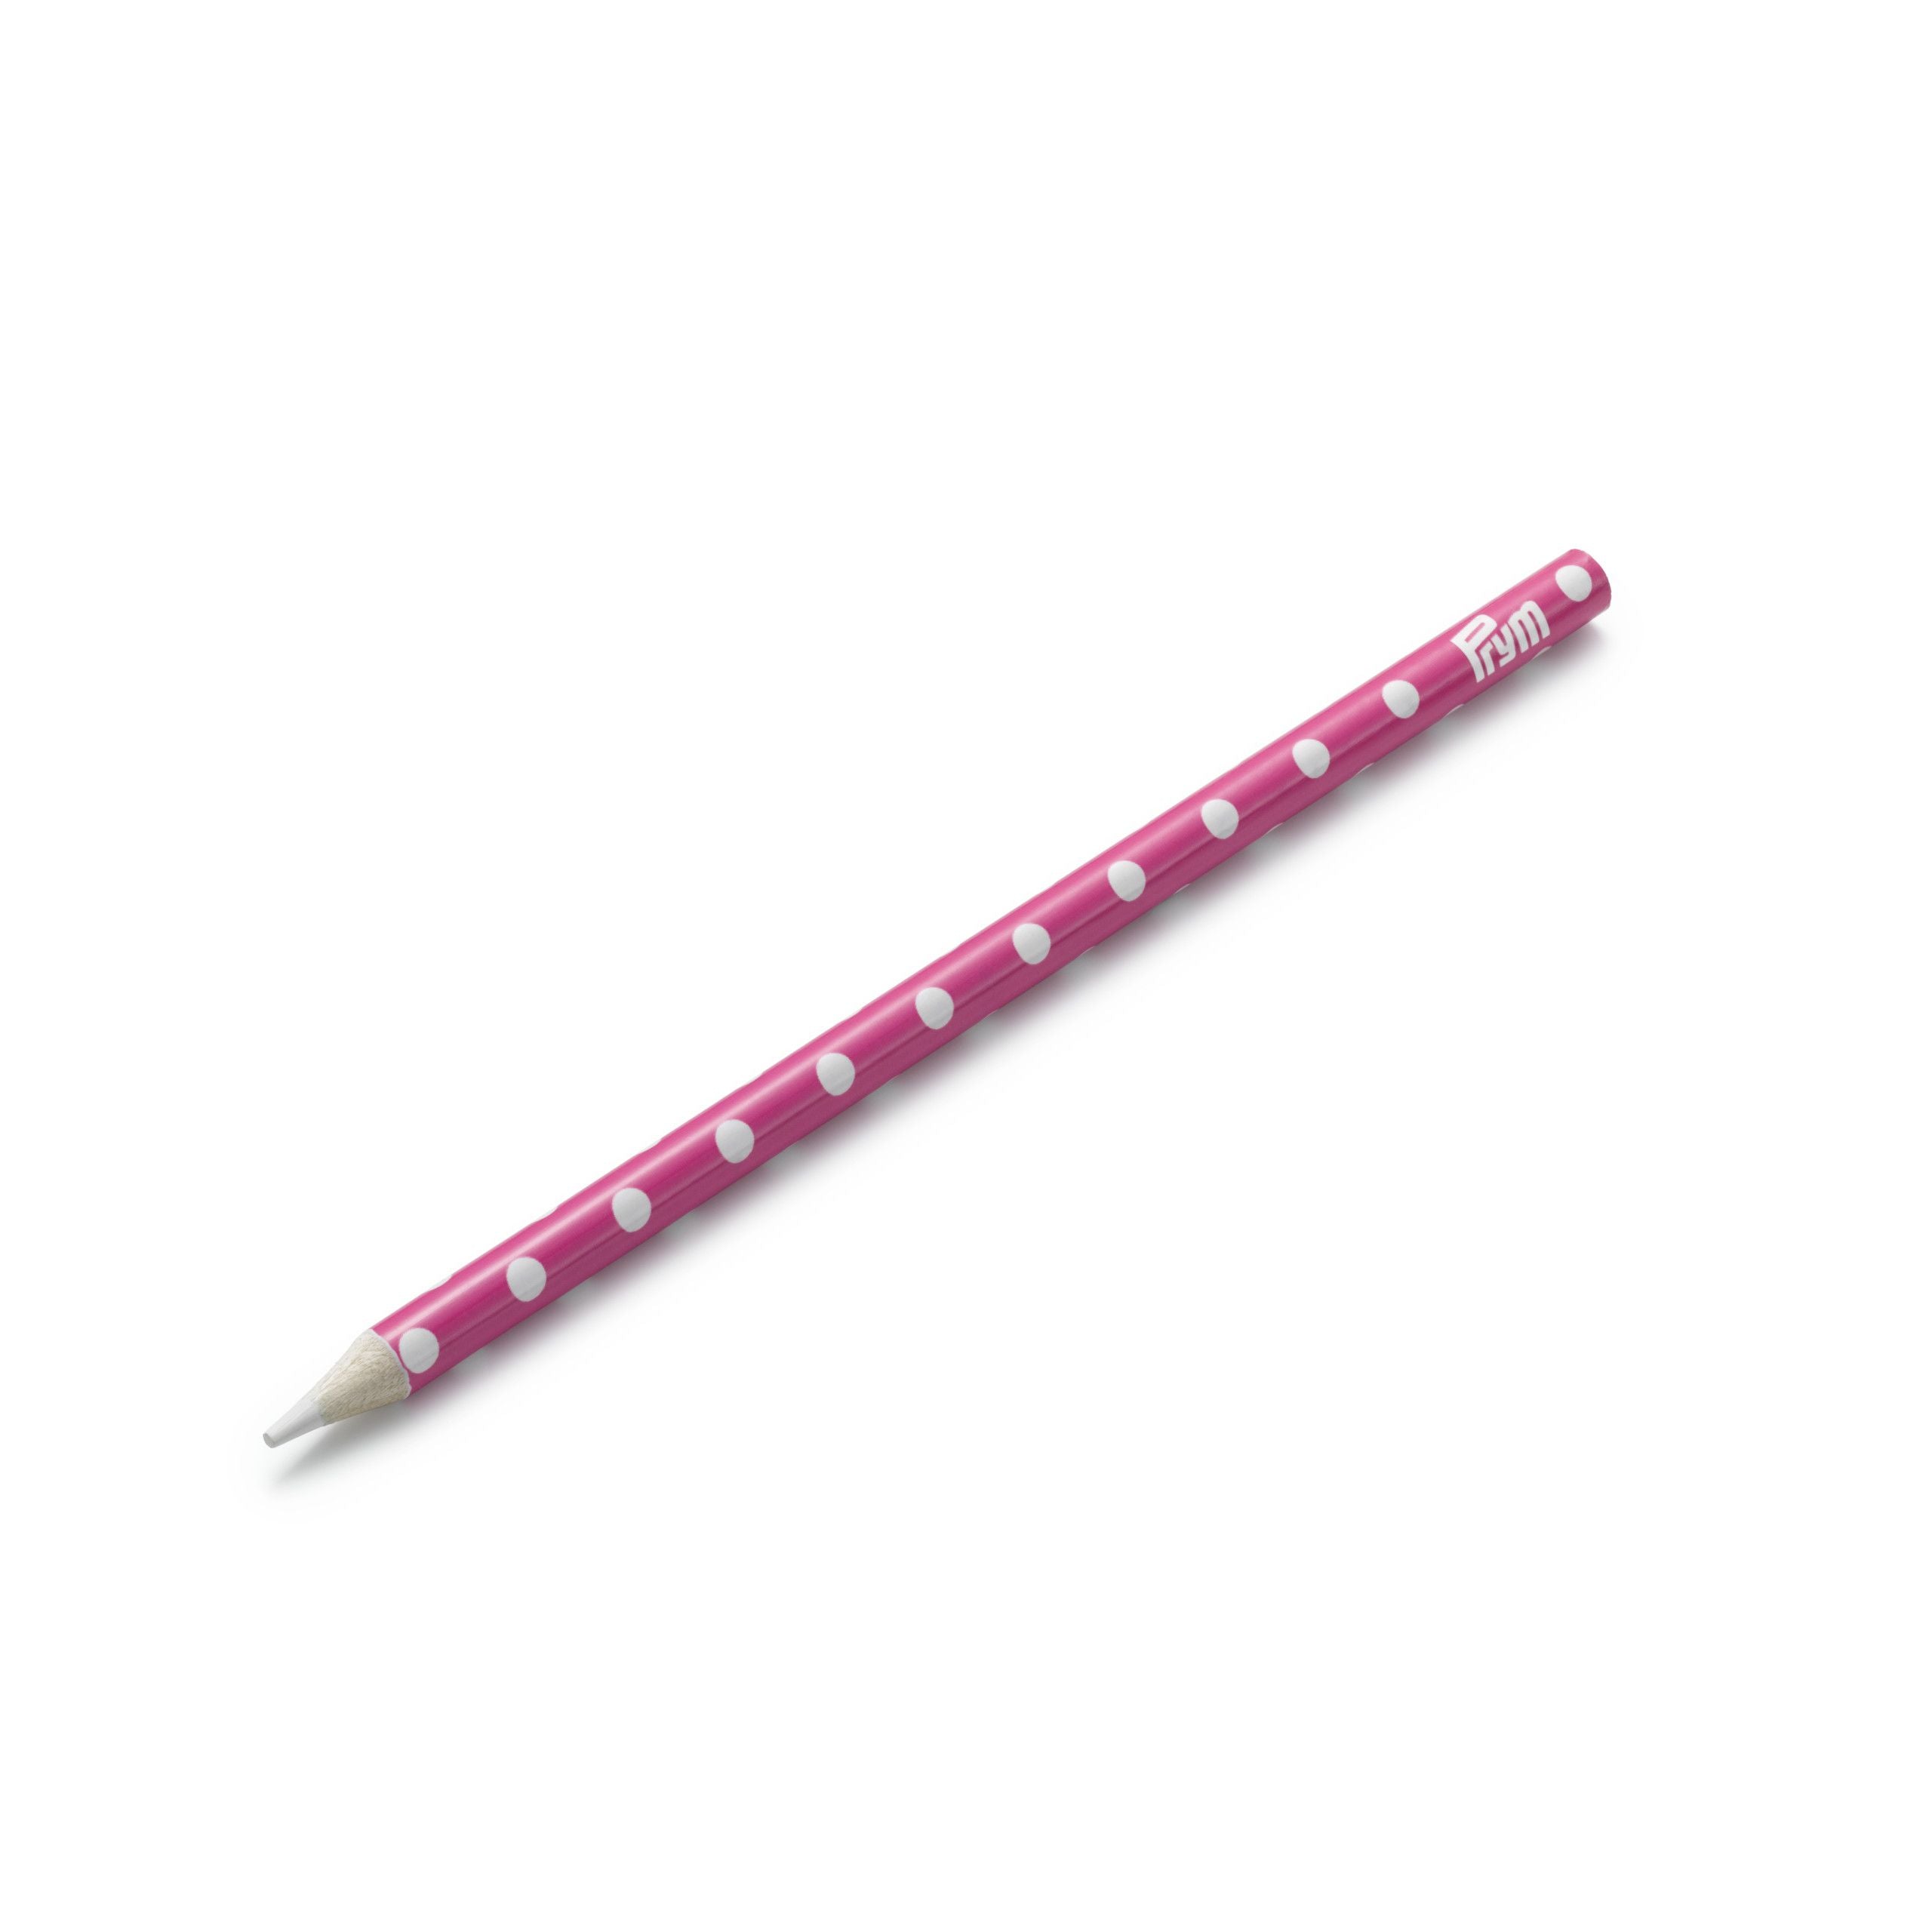 Prym Love marking pencil water erasable - pink polka dot